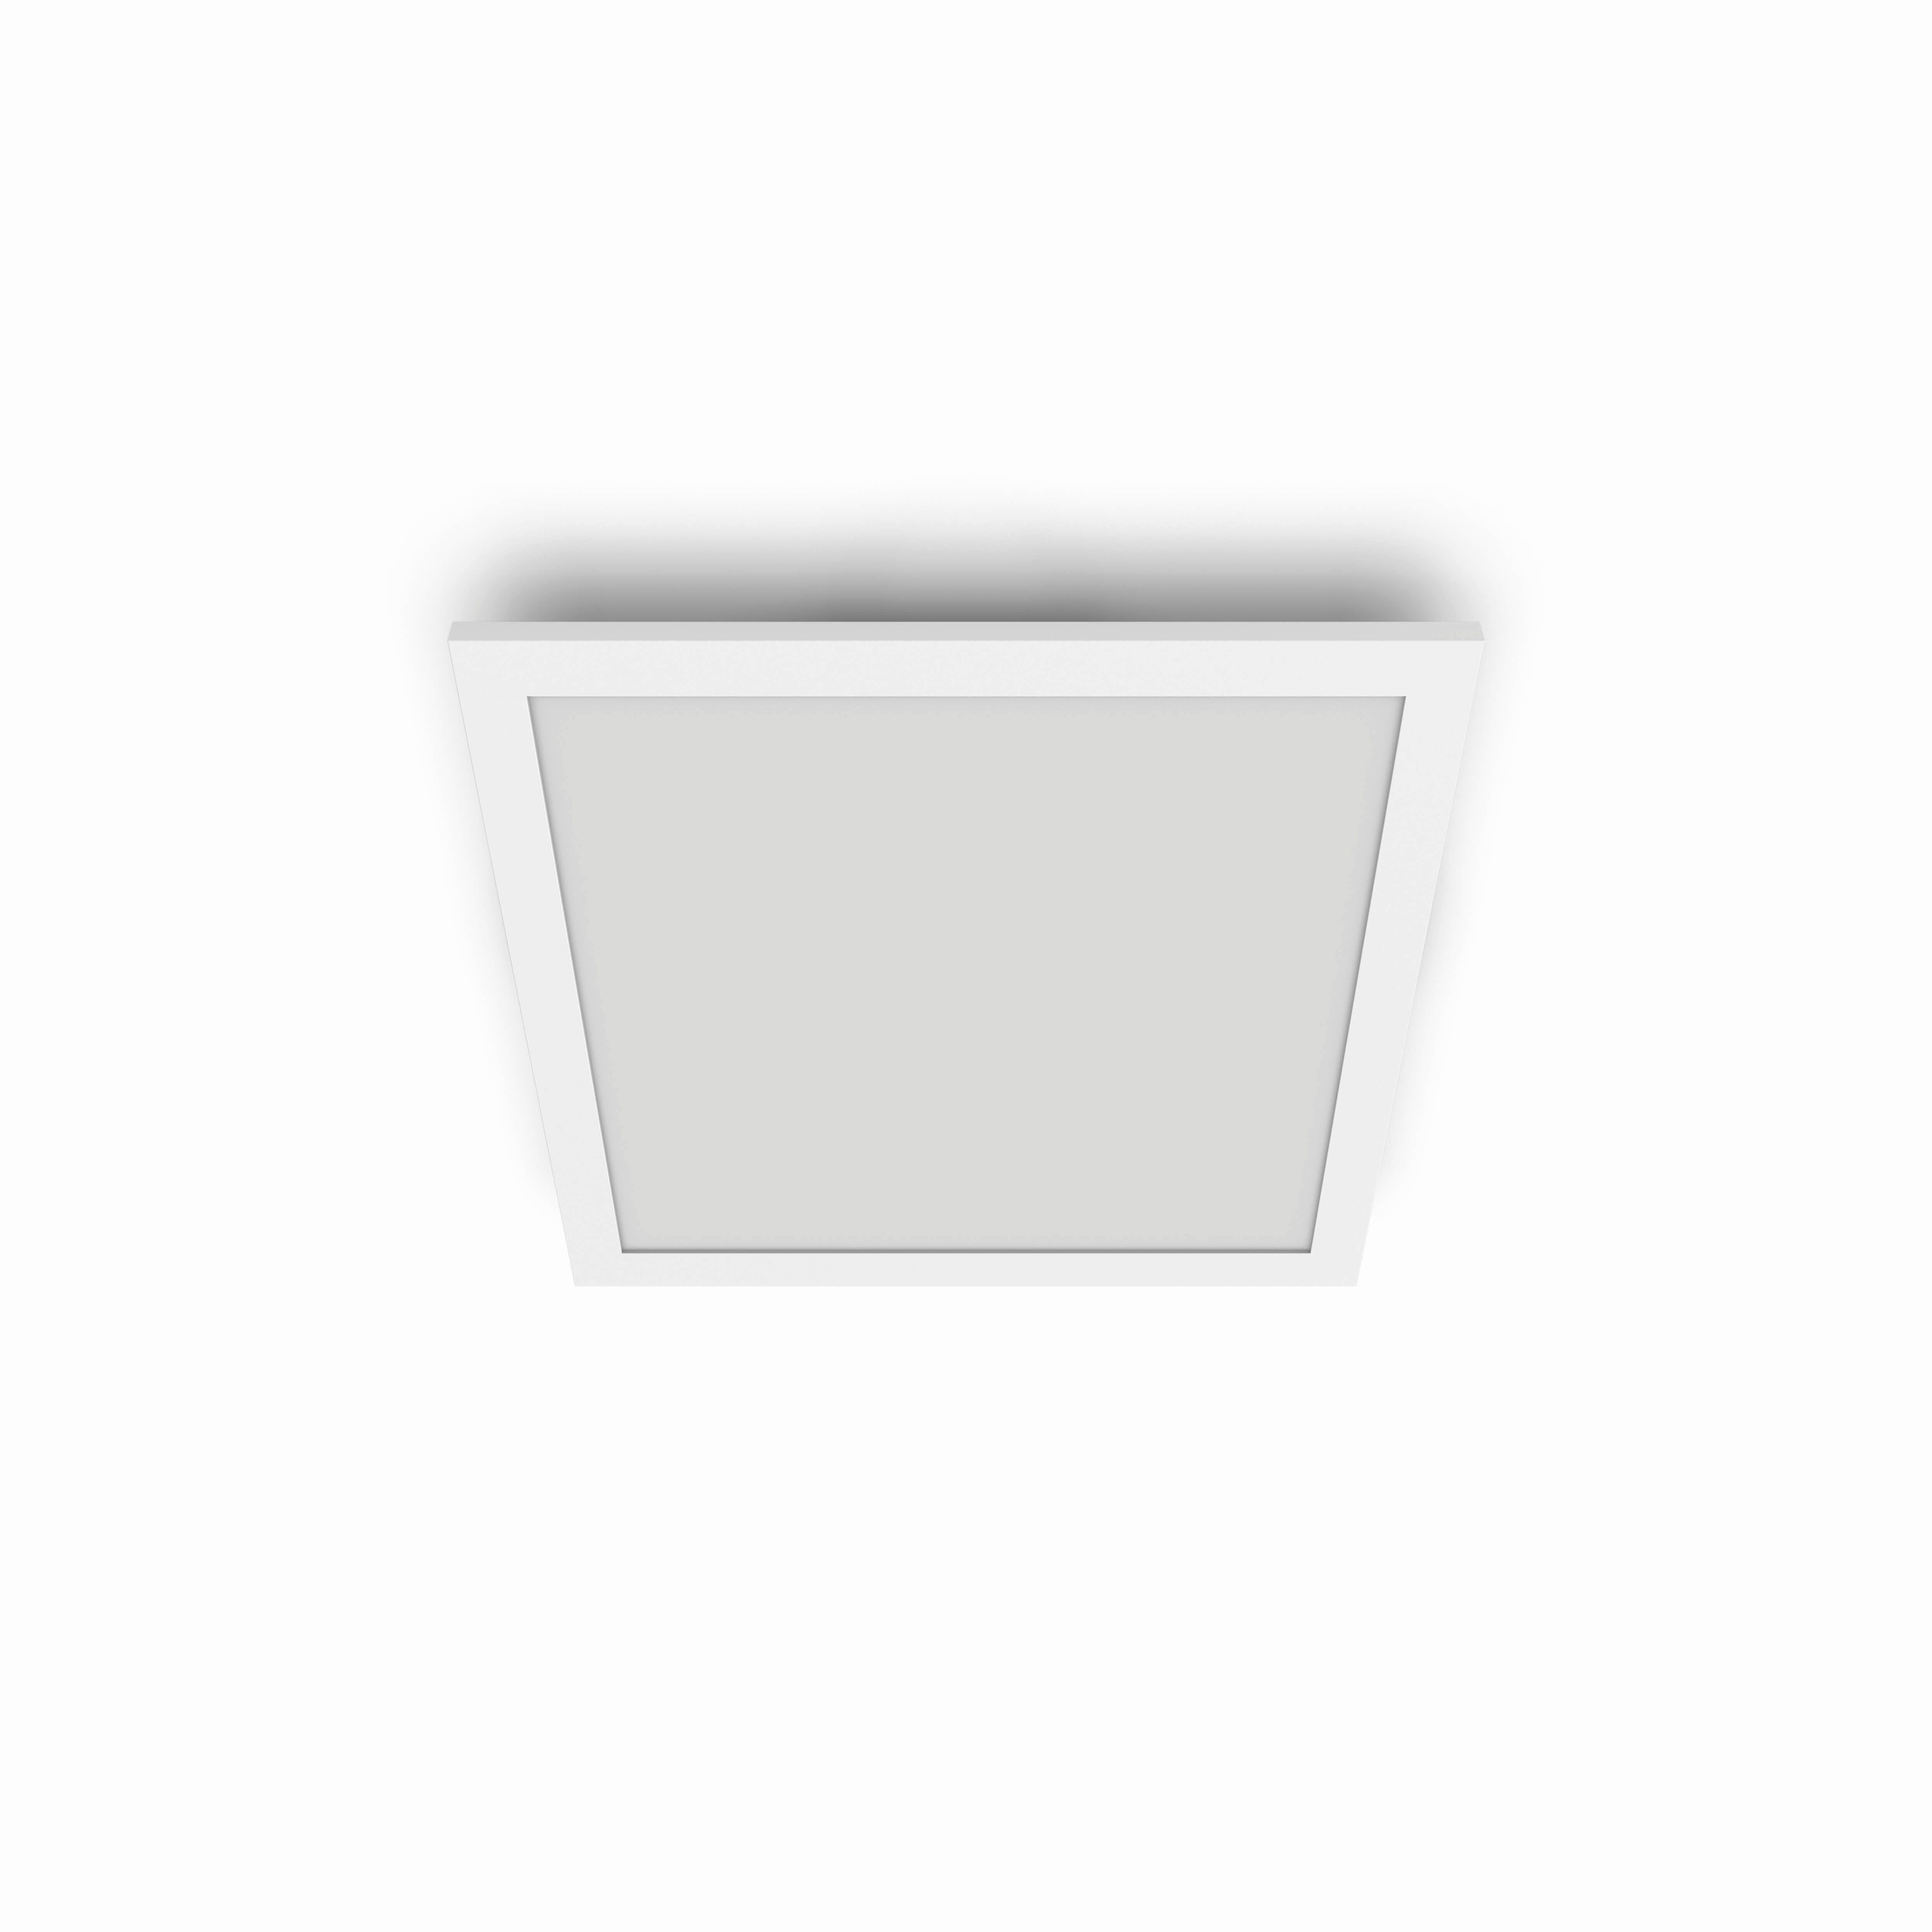 LED-DECKENLEUCHTE 30/4,2/30 cm   - Weiß, Basics, Kunststoff (30/4,2/30cm) - Philips